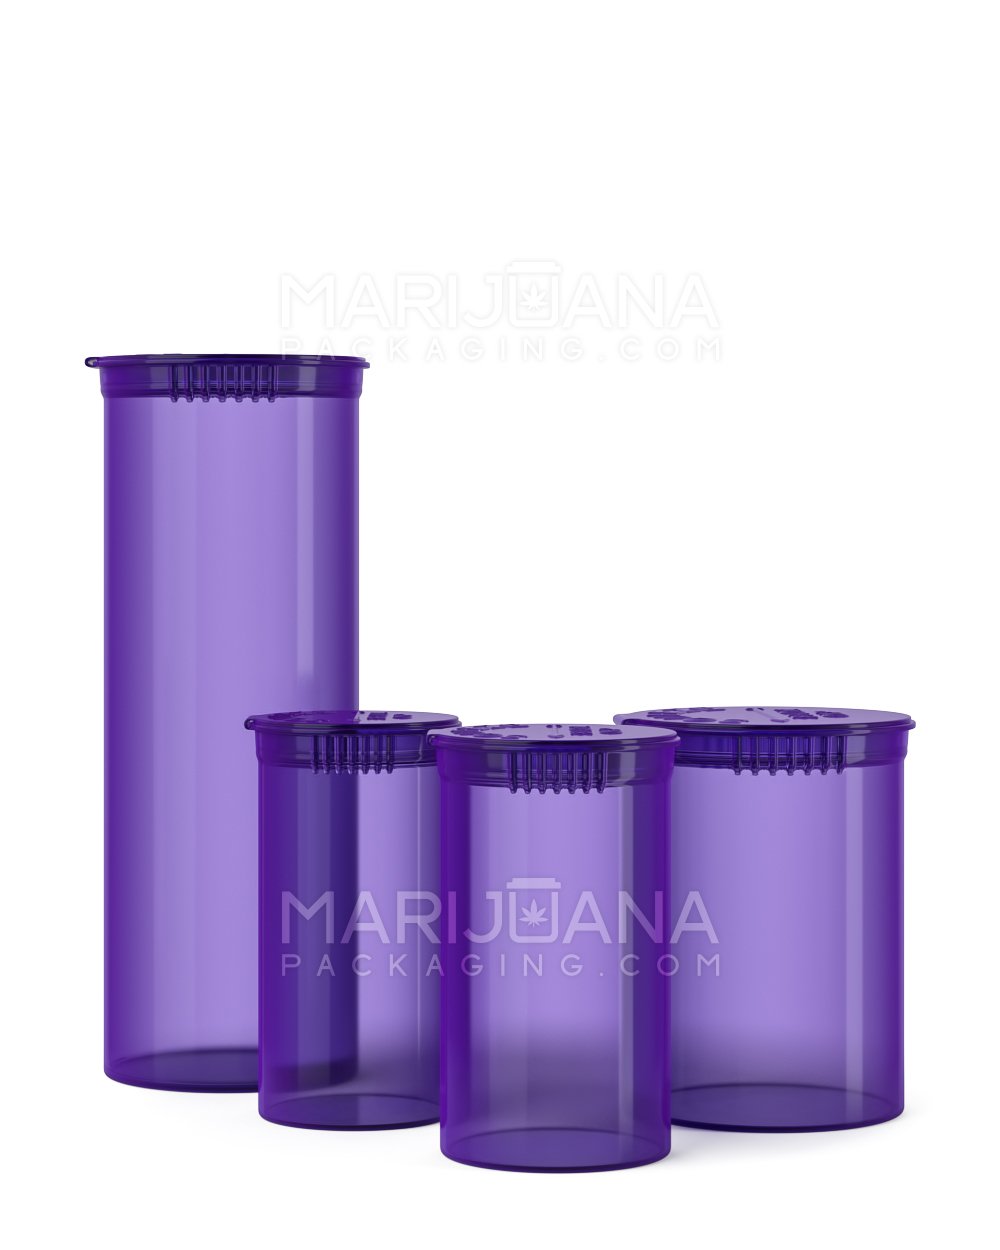 Child Resistant | Transparent Purple Pop Top Bottles | 13dr - 2g - 315 Count - 5